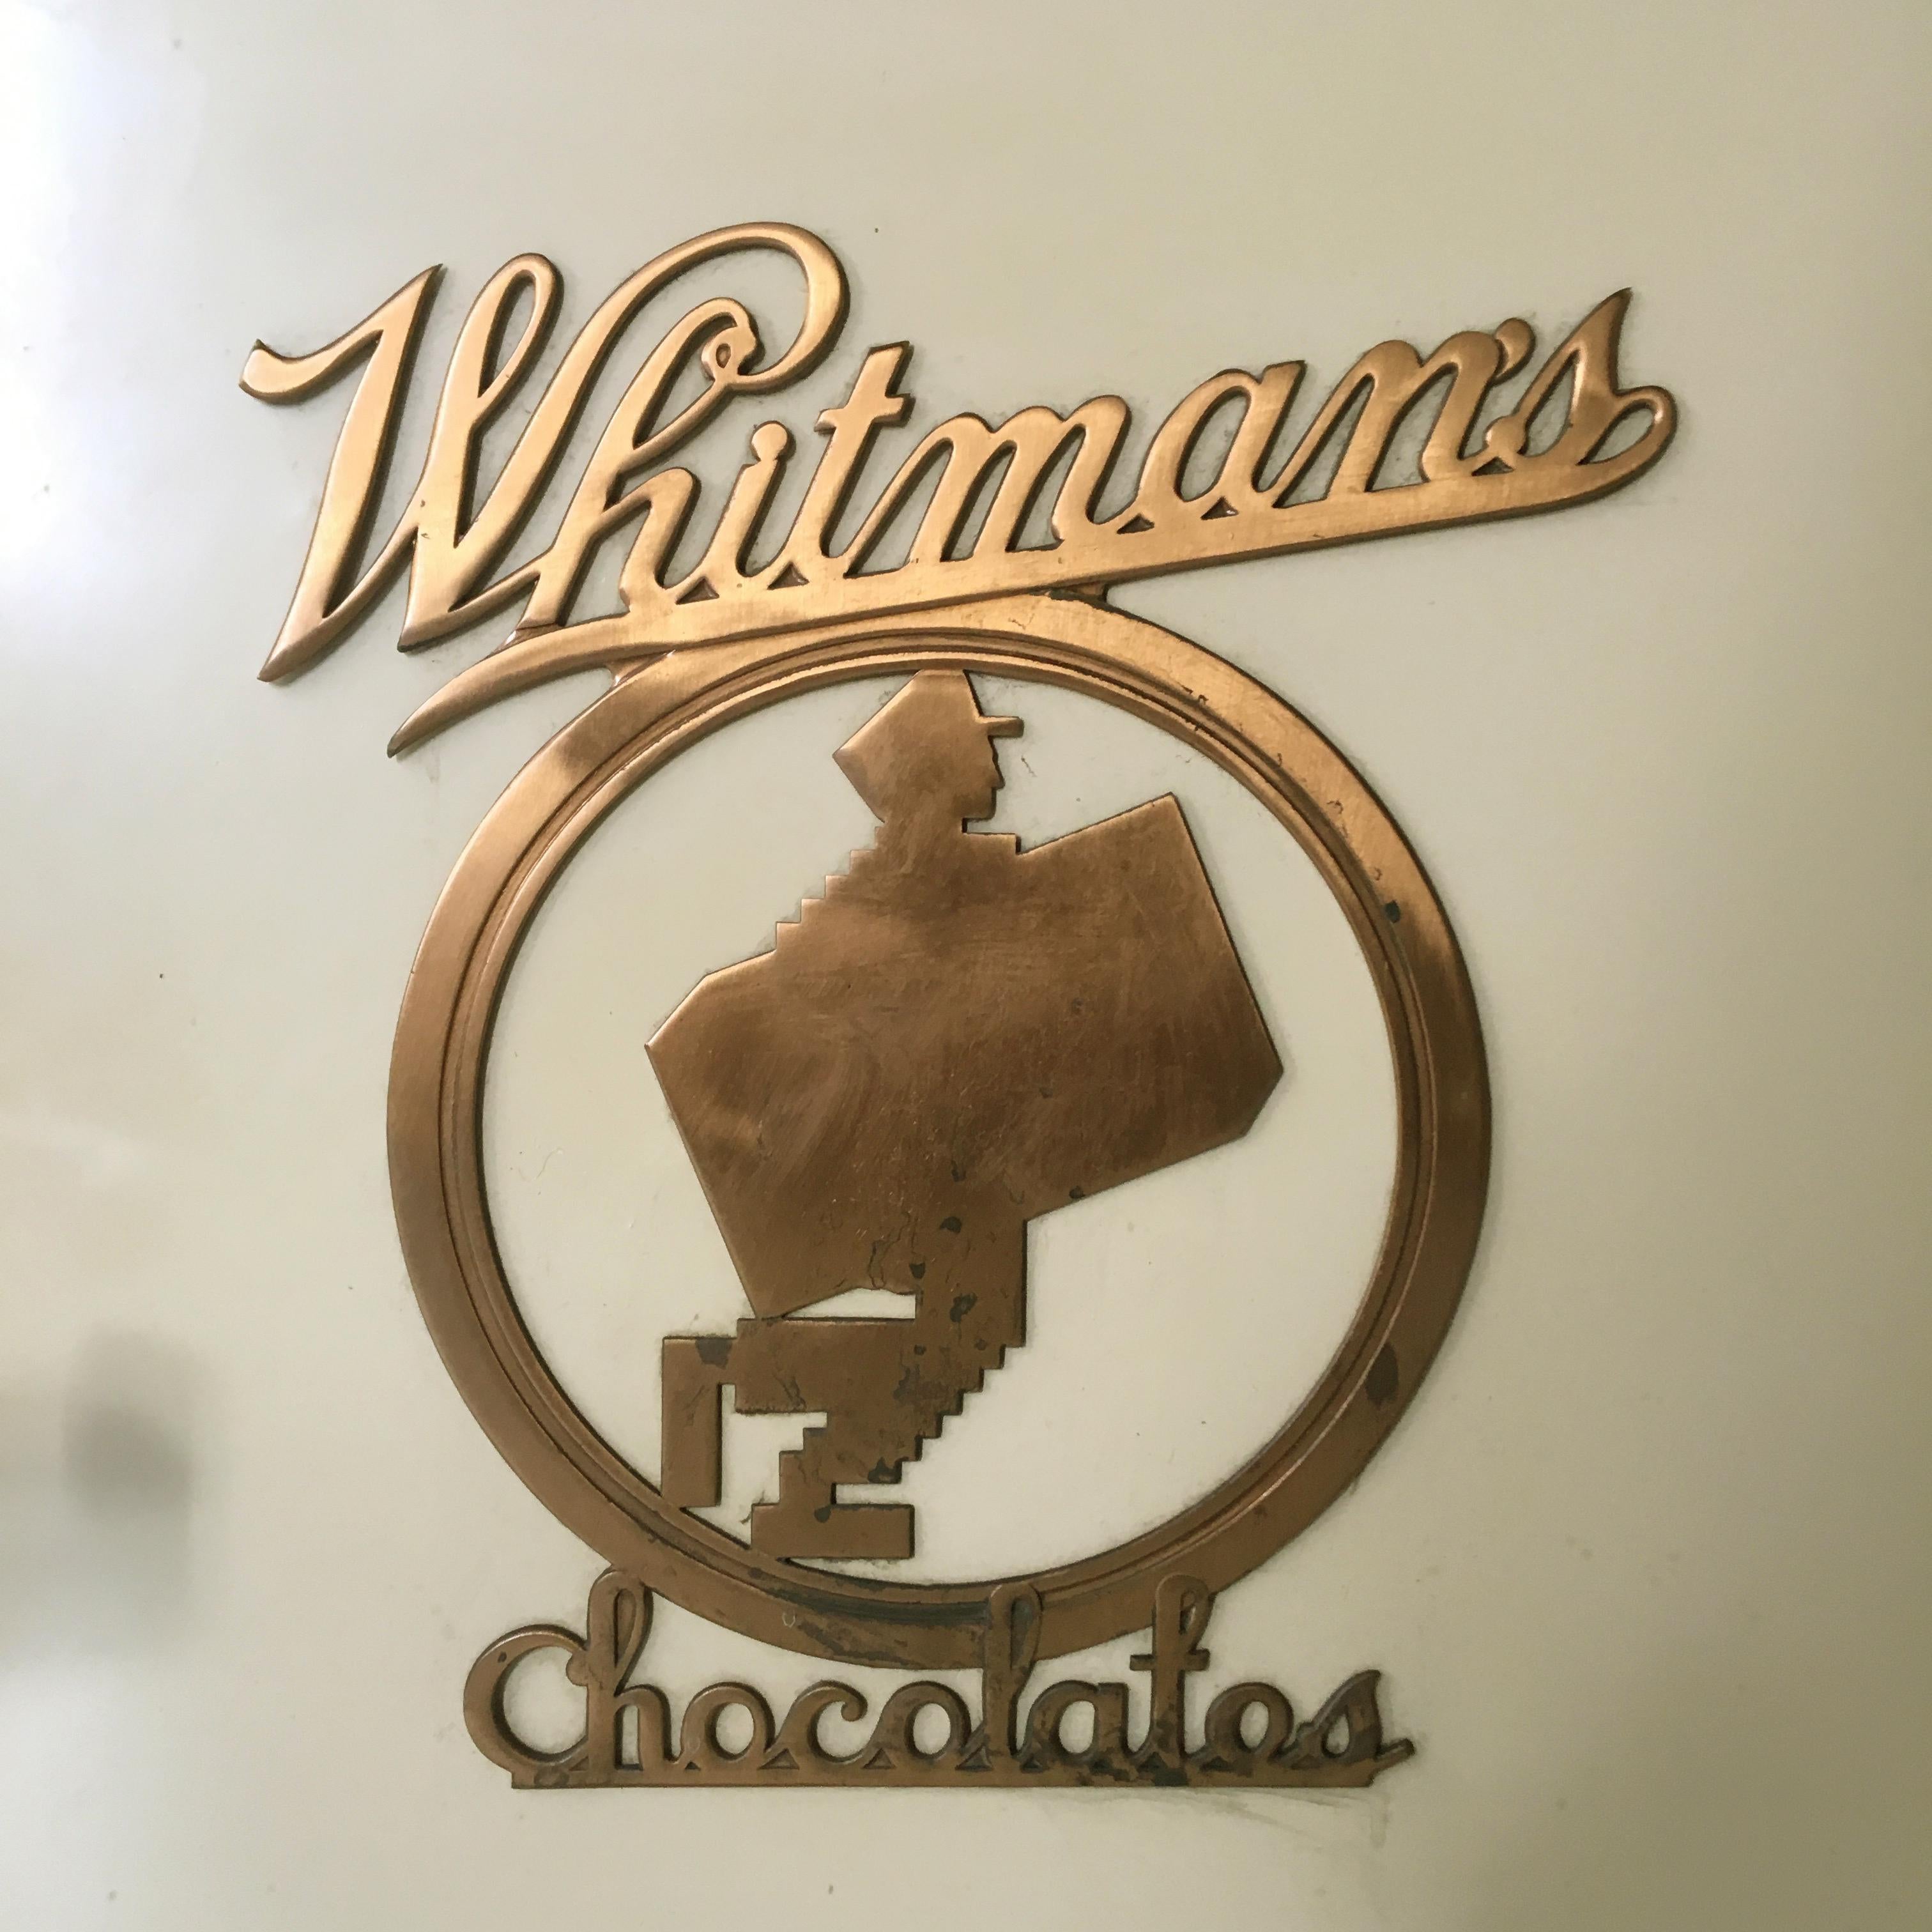 whitman's chocolate